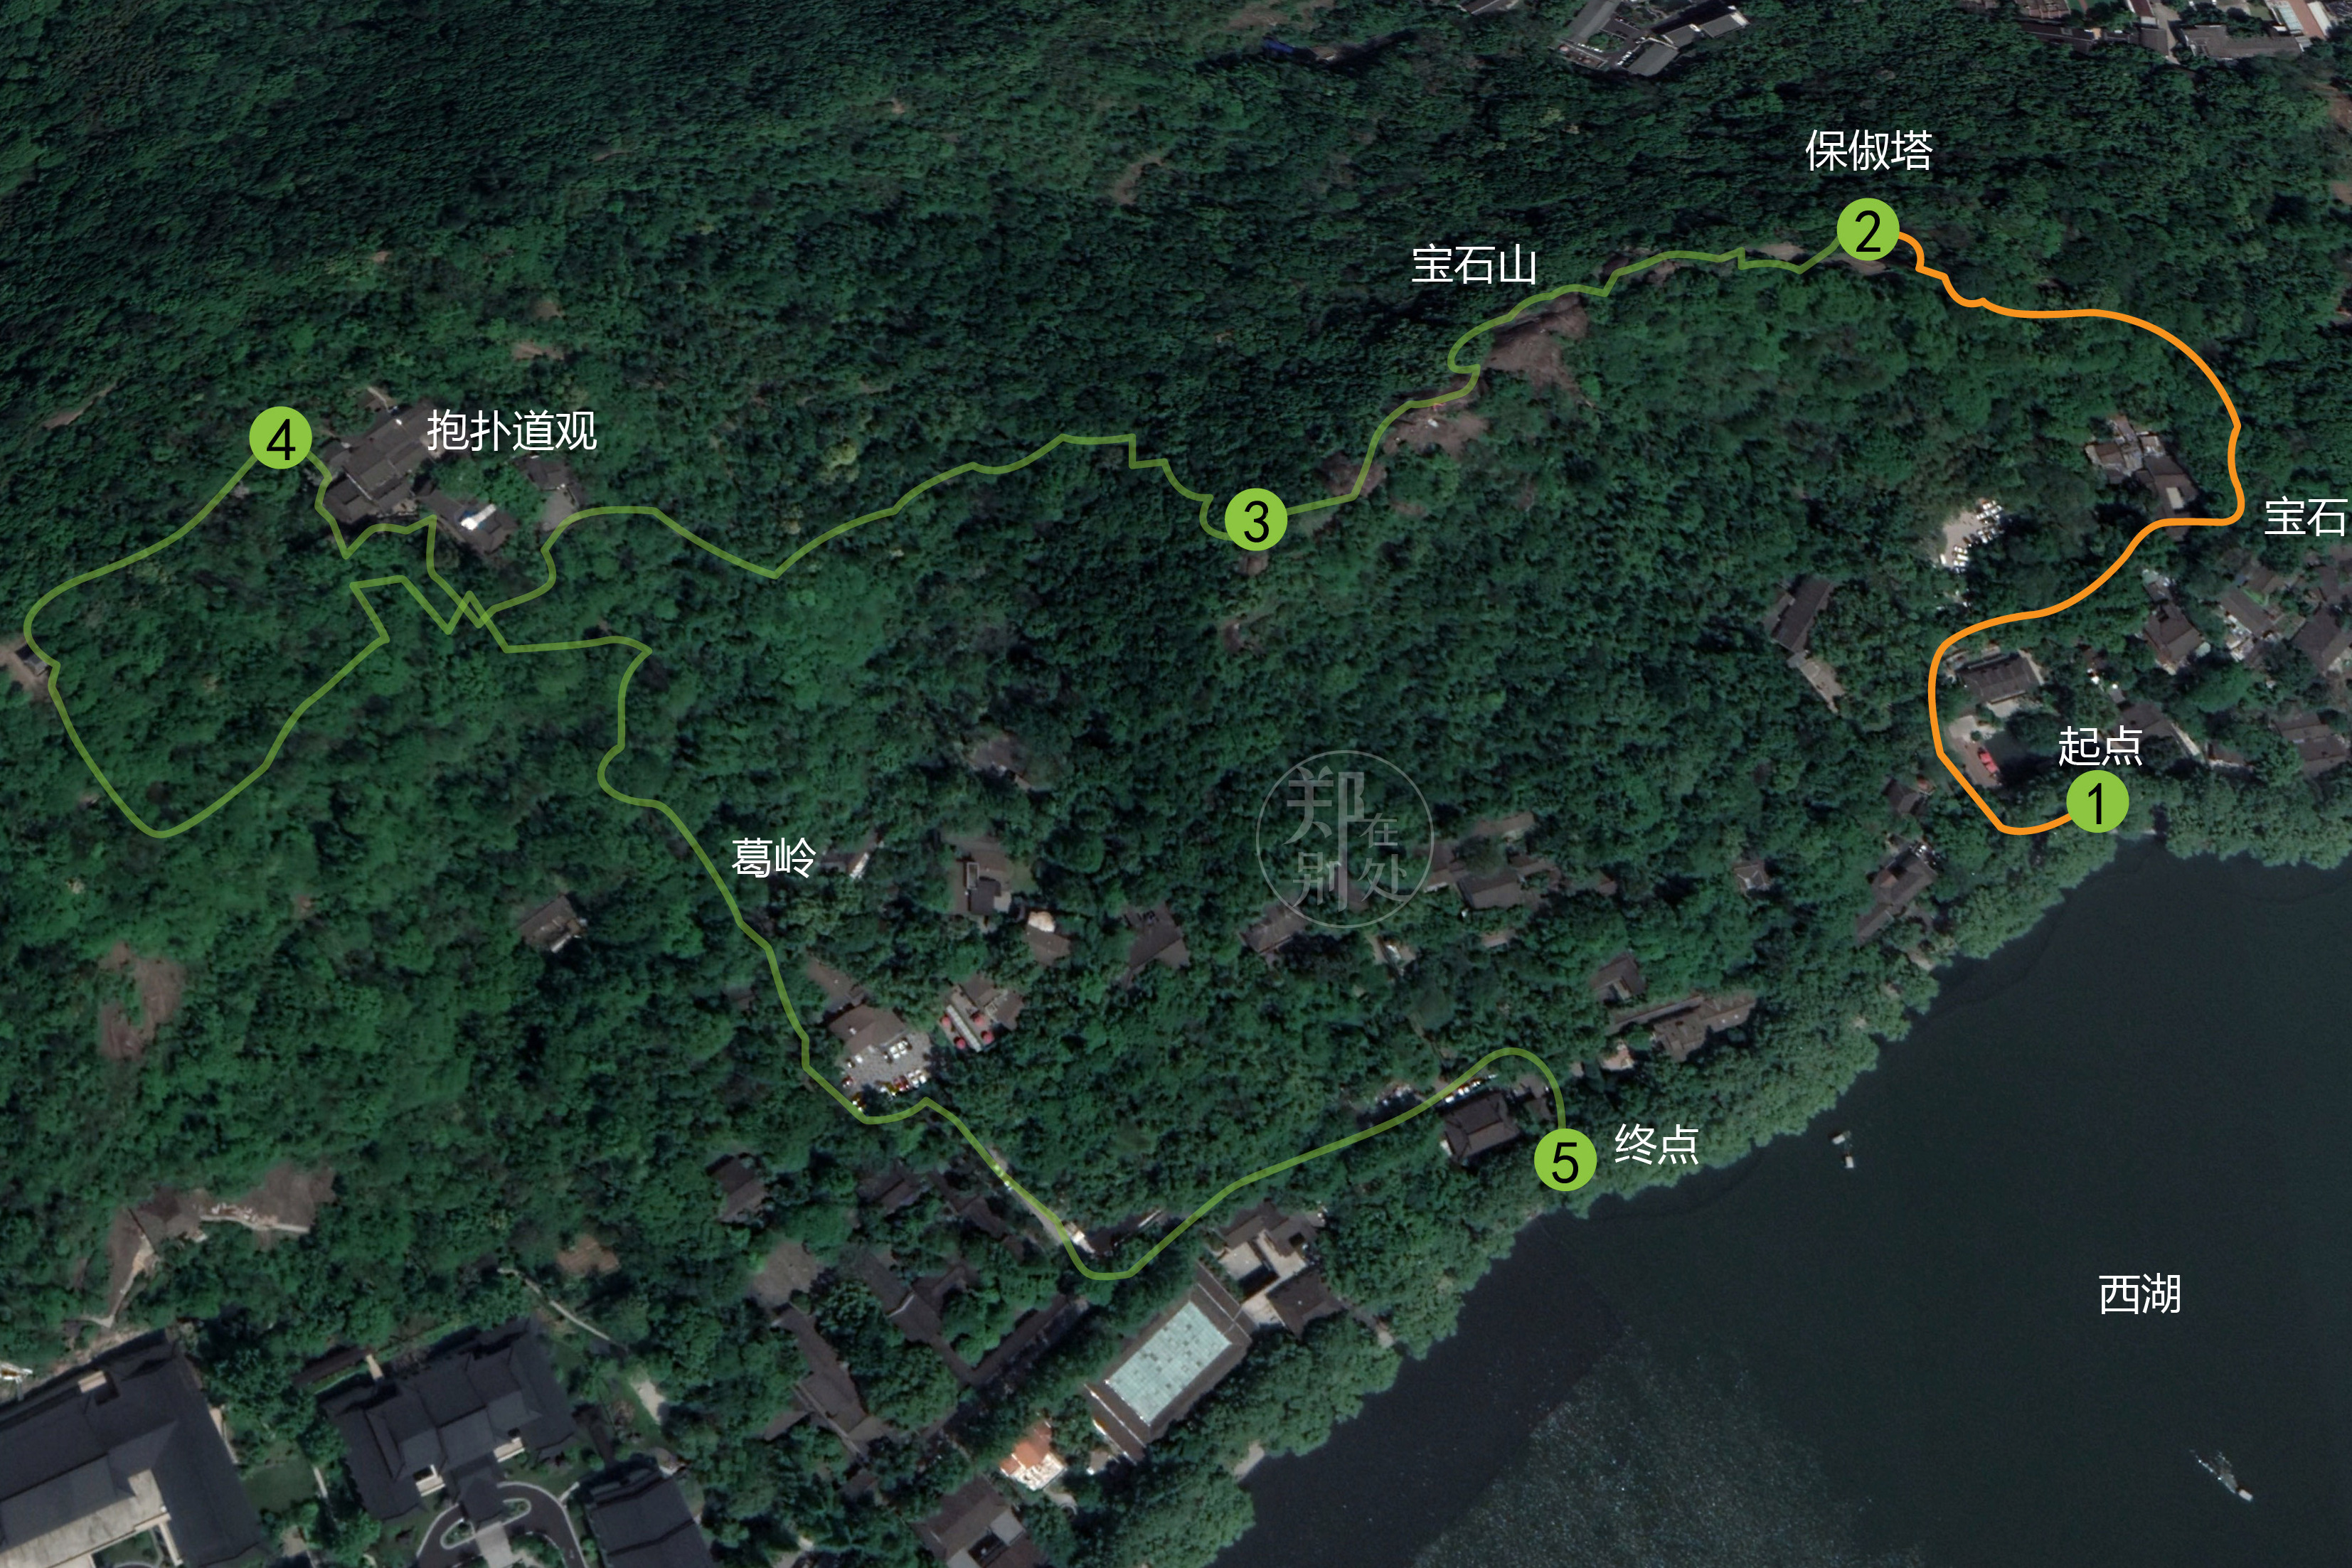 杭州登山徒步路线02:宝石山环线,堪称迷你精华路线